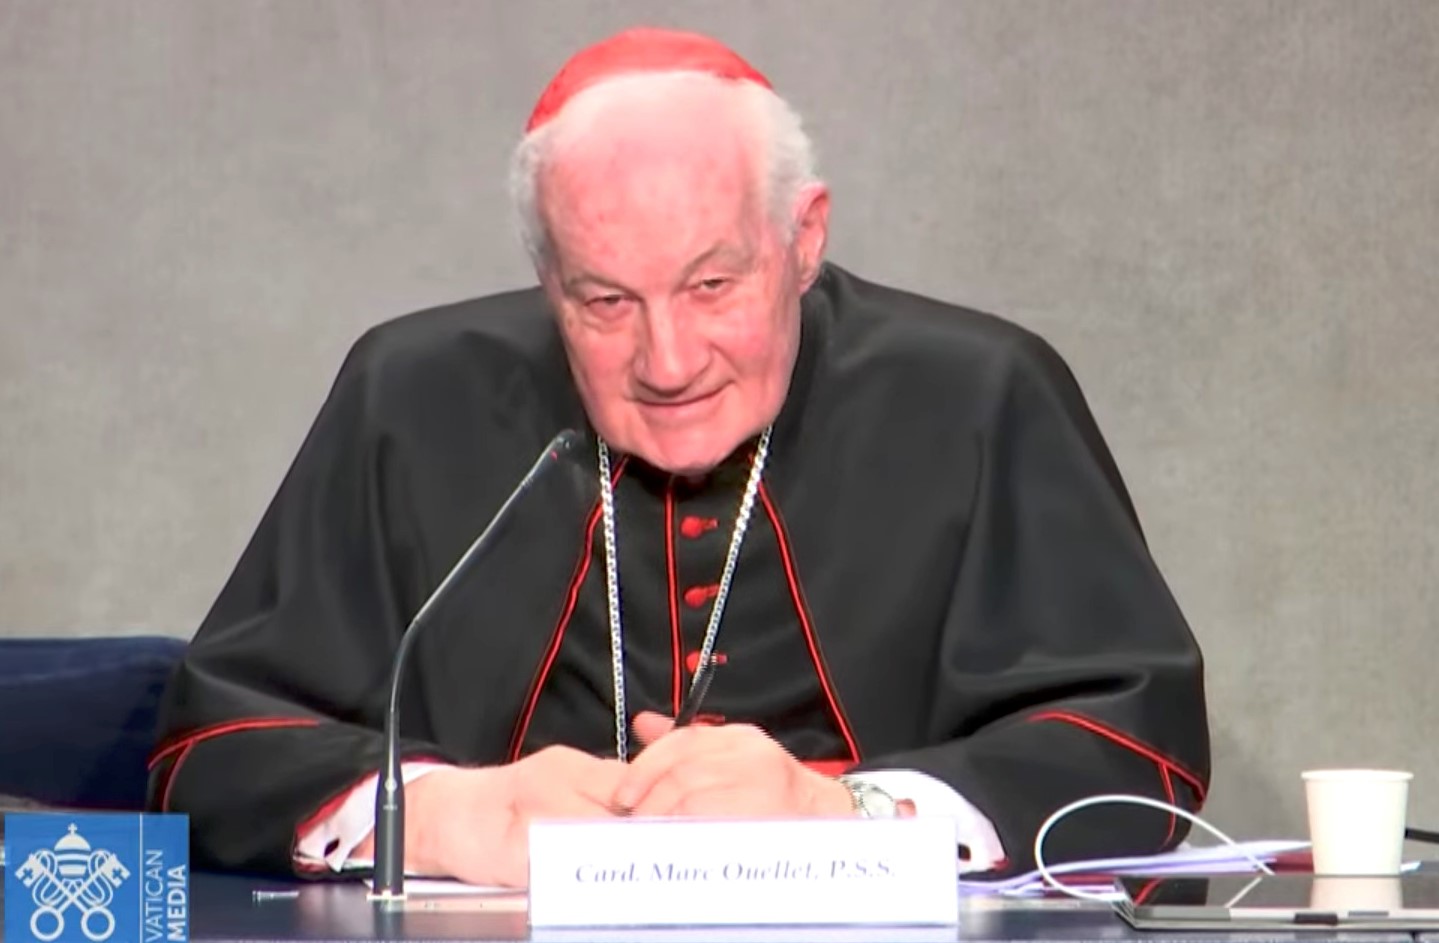 Kardinaal Marc Ouellet op de voorstelling van het symposium over de priesteropleiding volgend jaar in Rome